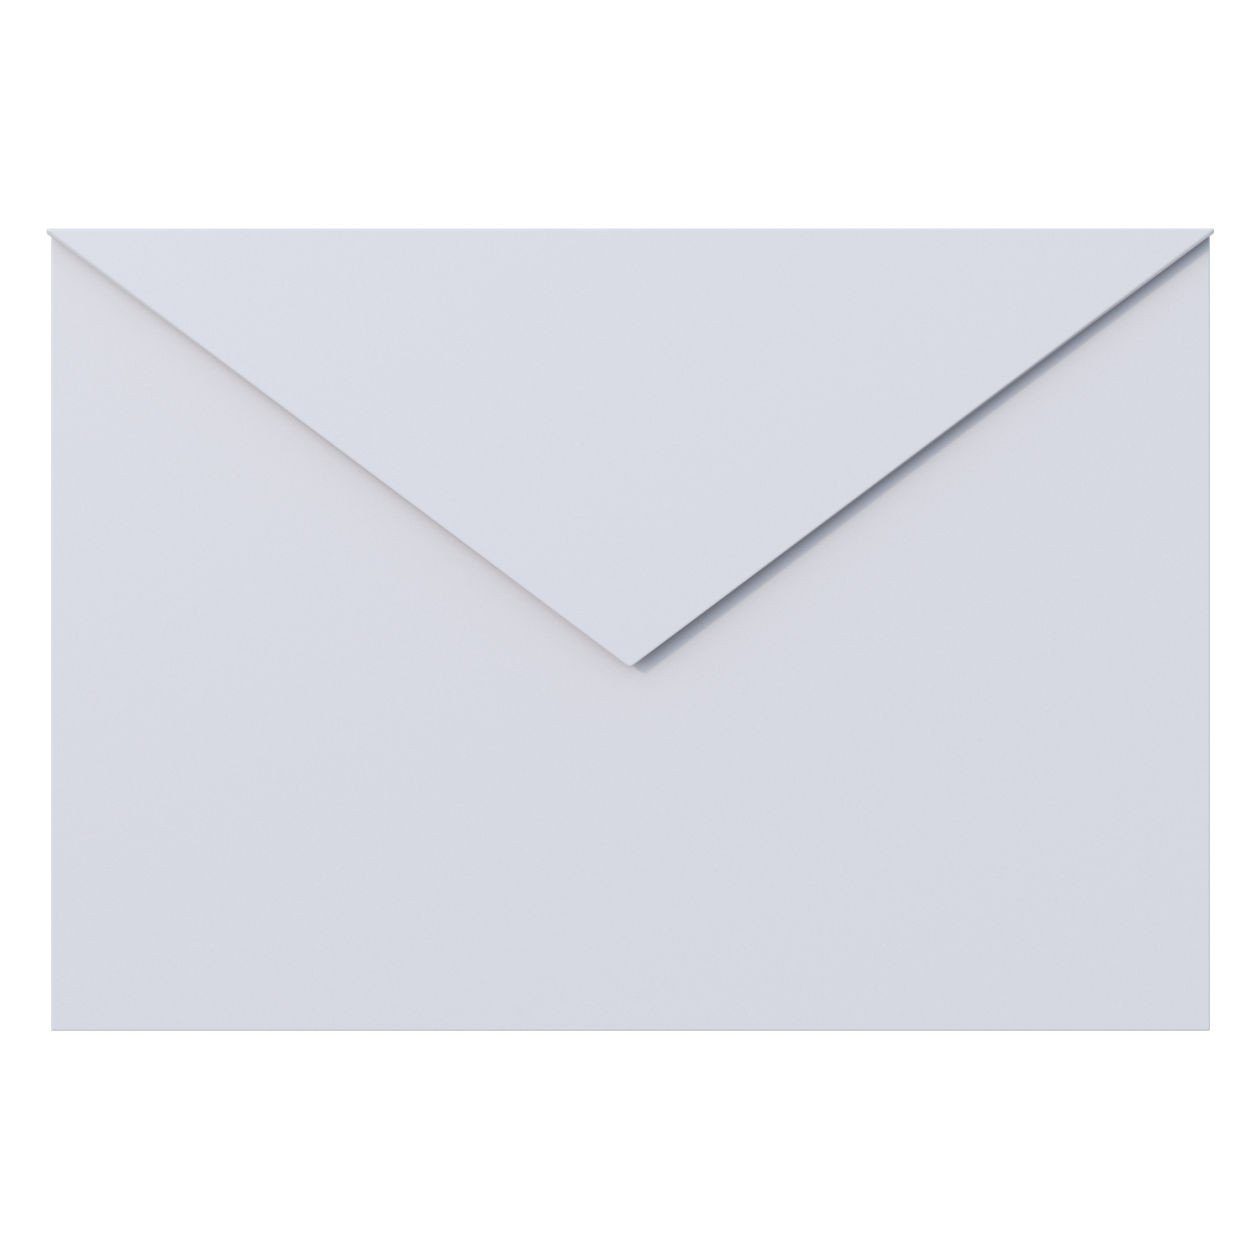 Bravios Briefkasten Briefkasten Letter Weiß